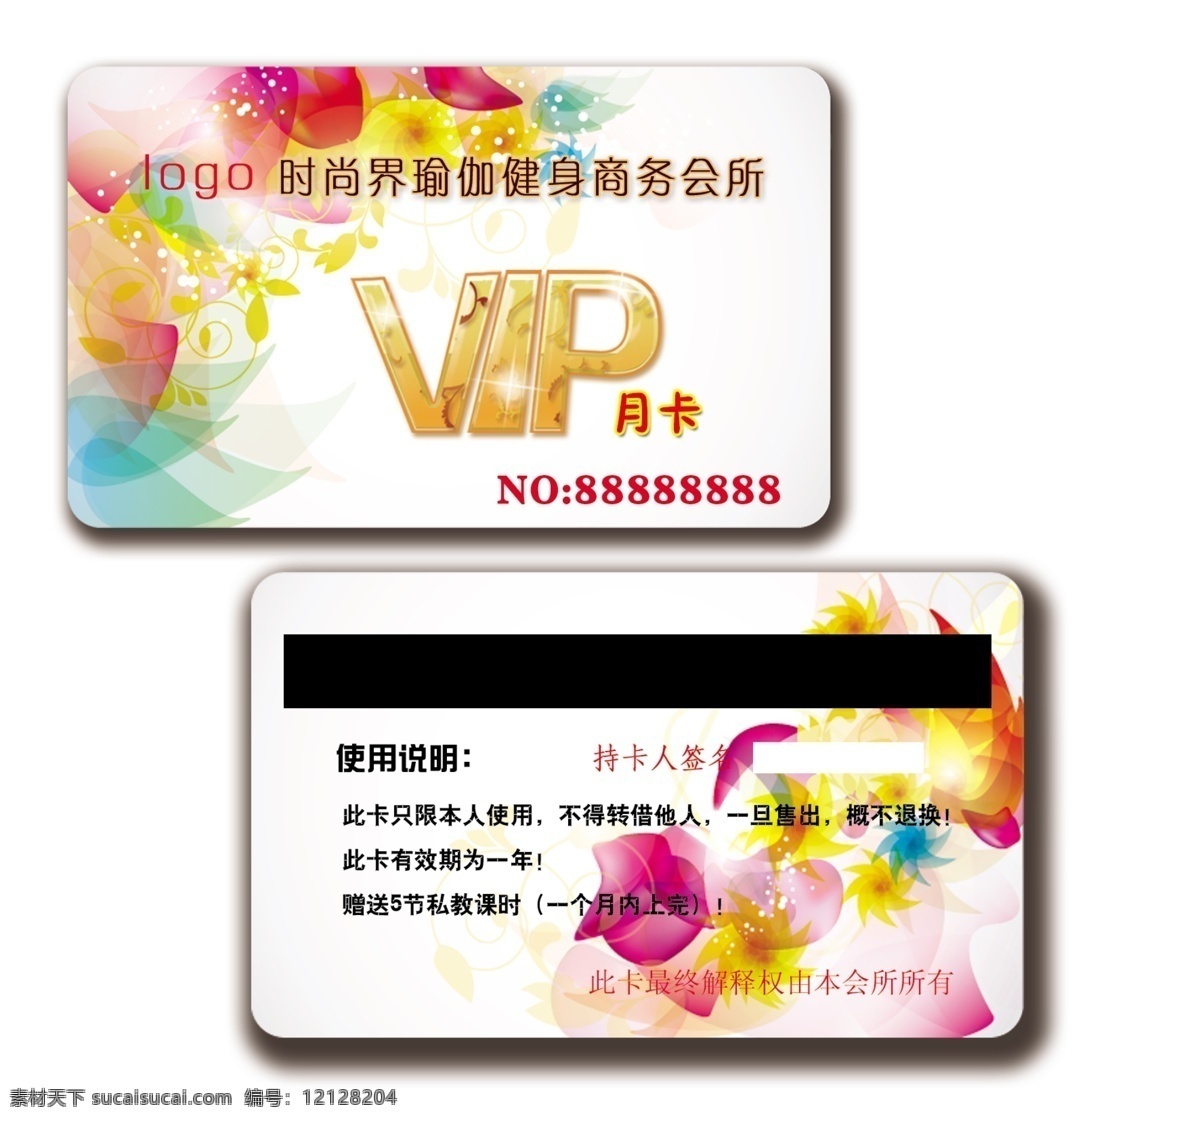 月卡 小清新 花 vip 会员卡 瑜伽 商务会所 年卡 卡 名片卡片 广告设计模板 源文件